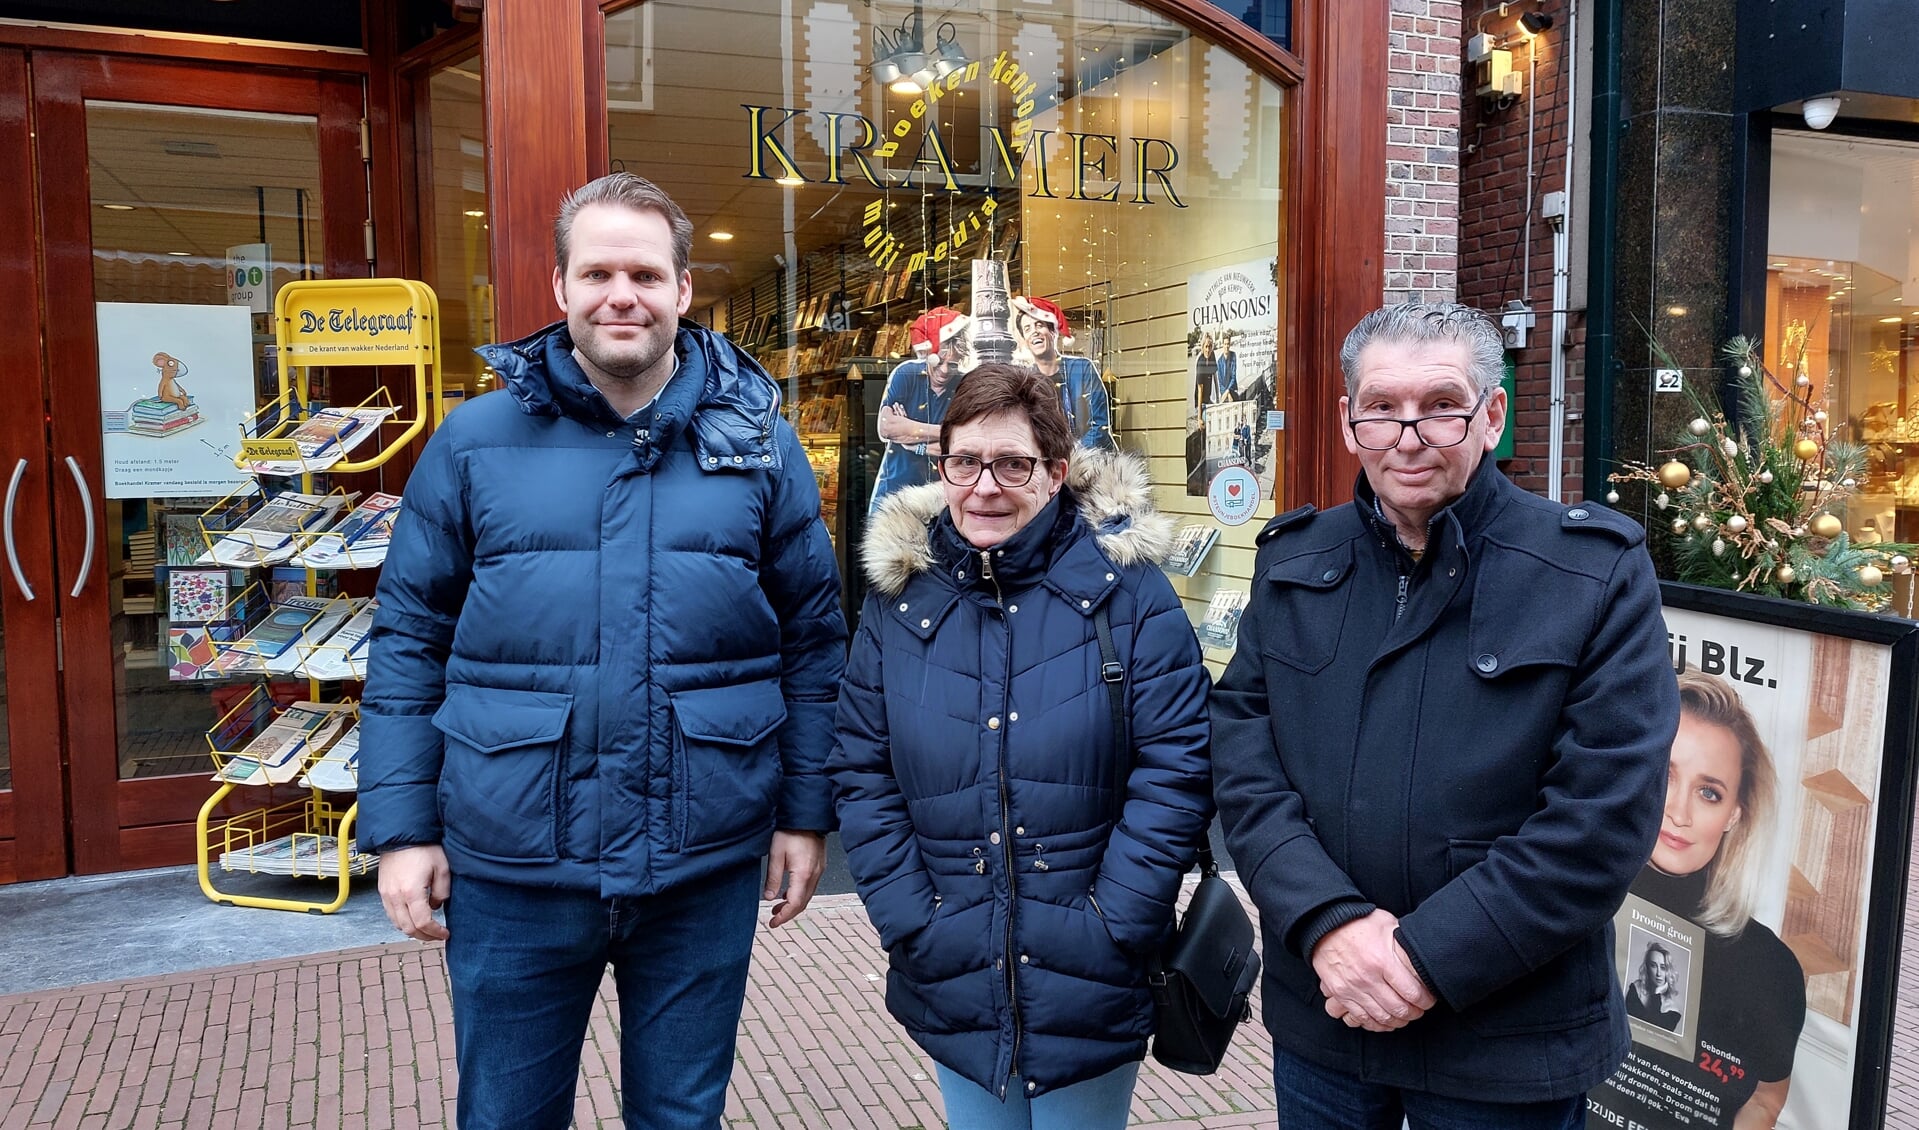 Vlnr: Arjan Gorsseling, Carla en Gerard van Vuuren voor boekhandel Kramer. Eén van de verkooppunten. Foto: Han van de Laar